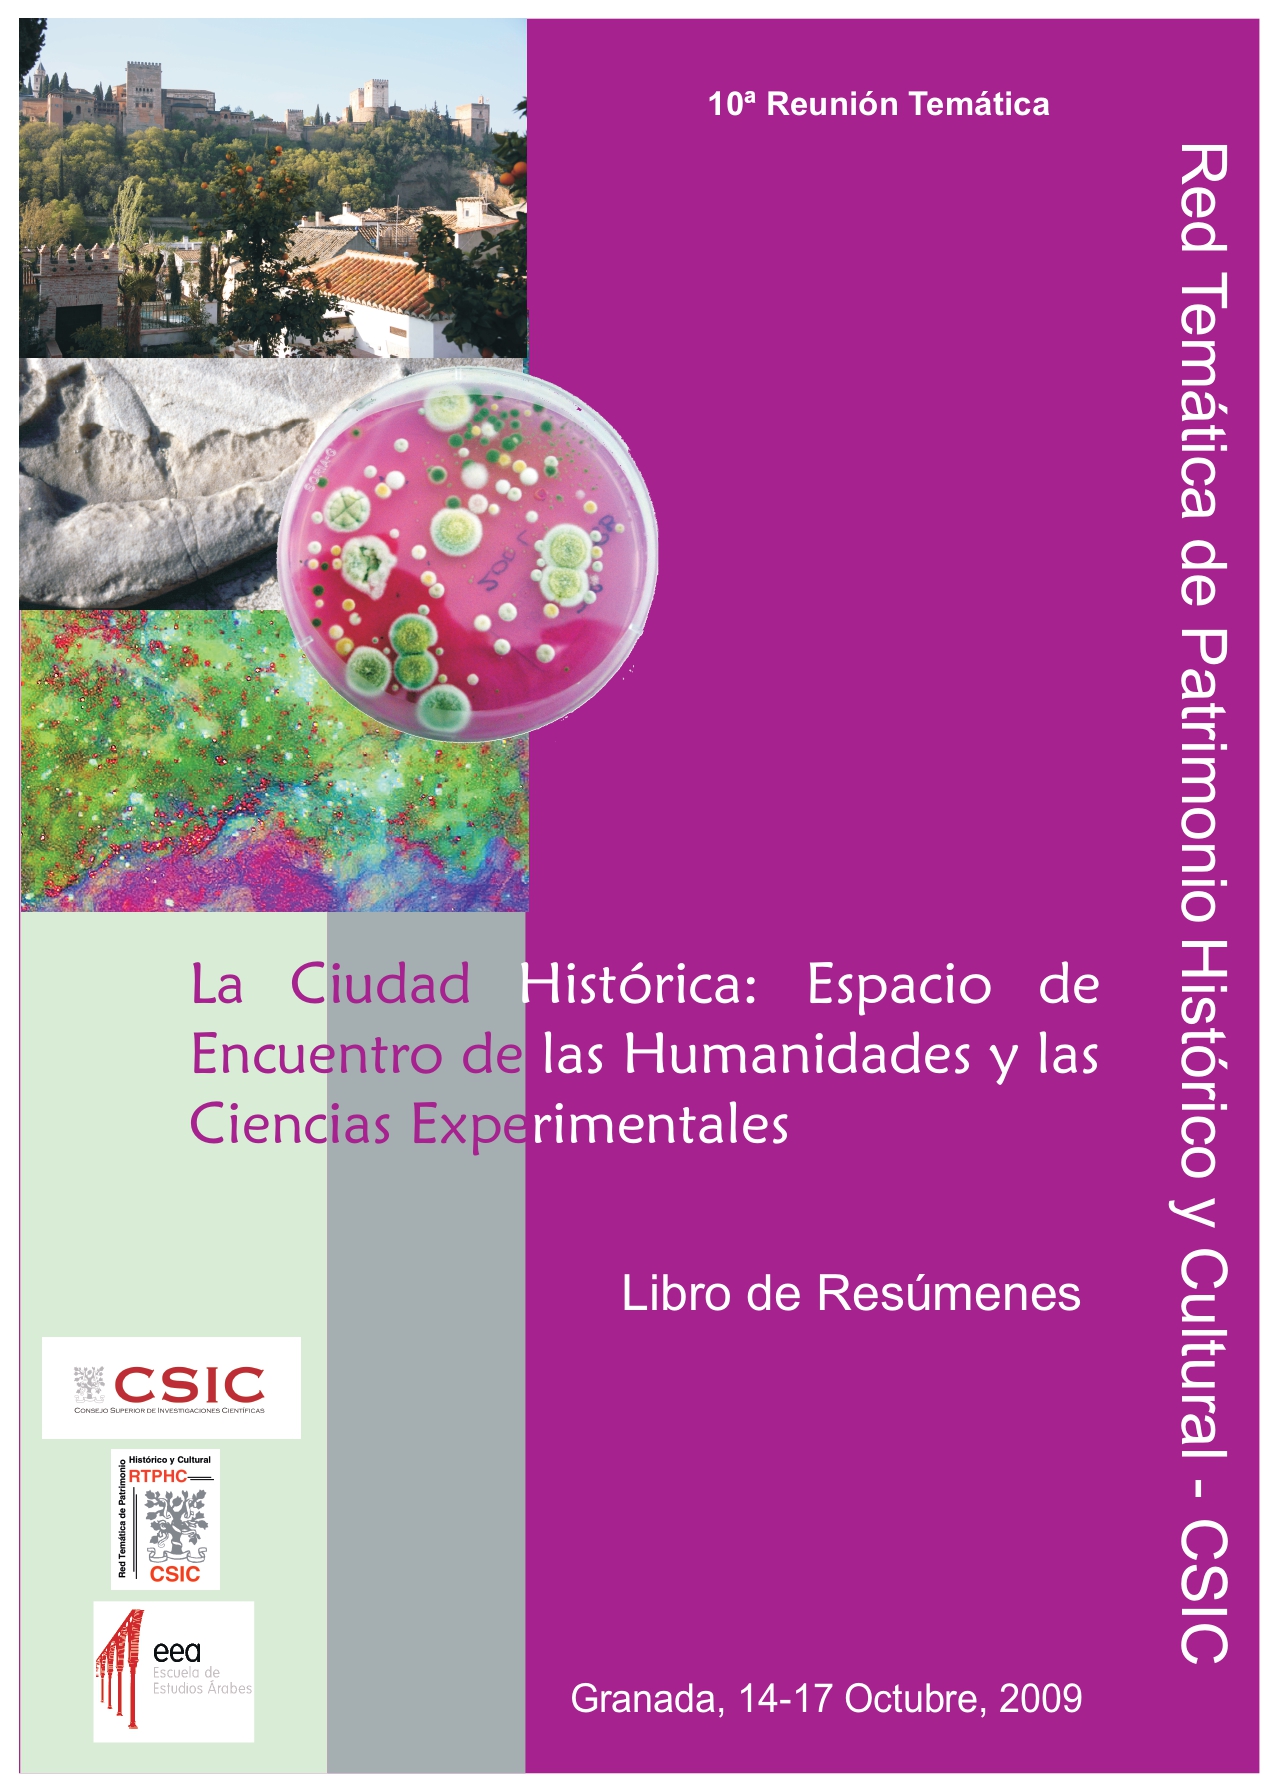 Imagen de portada del libro La Ciudad Histórica